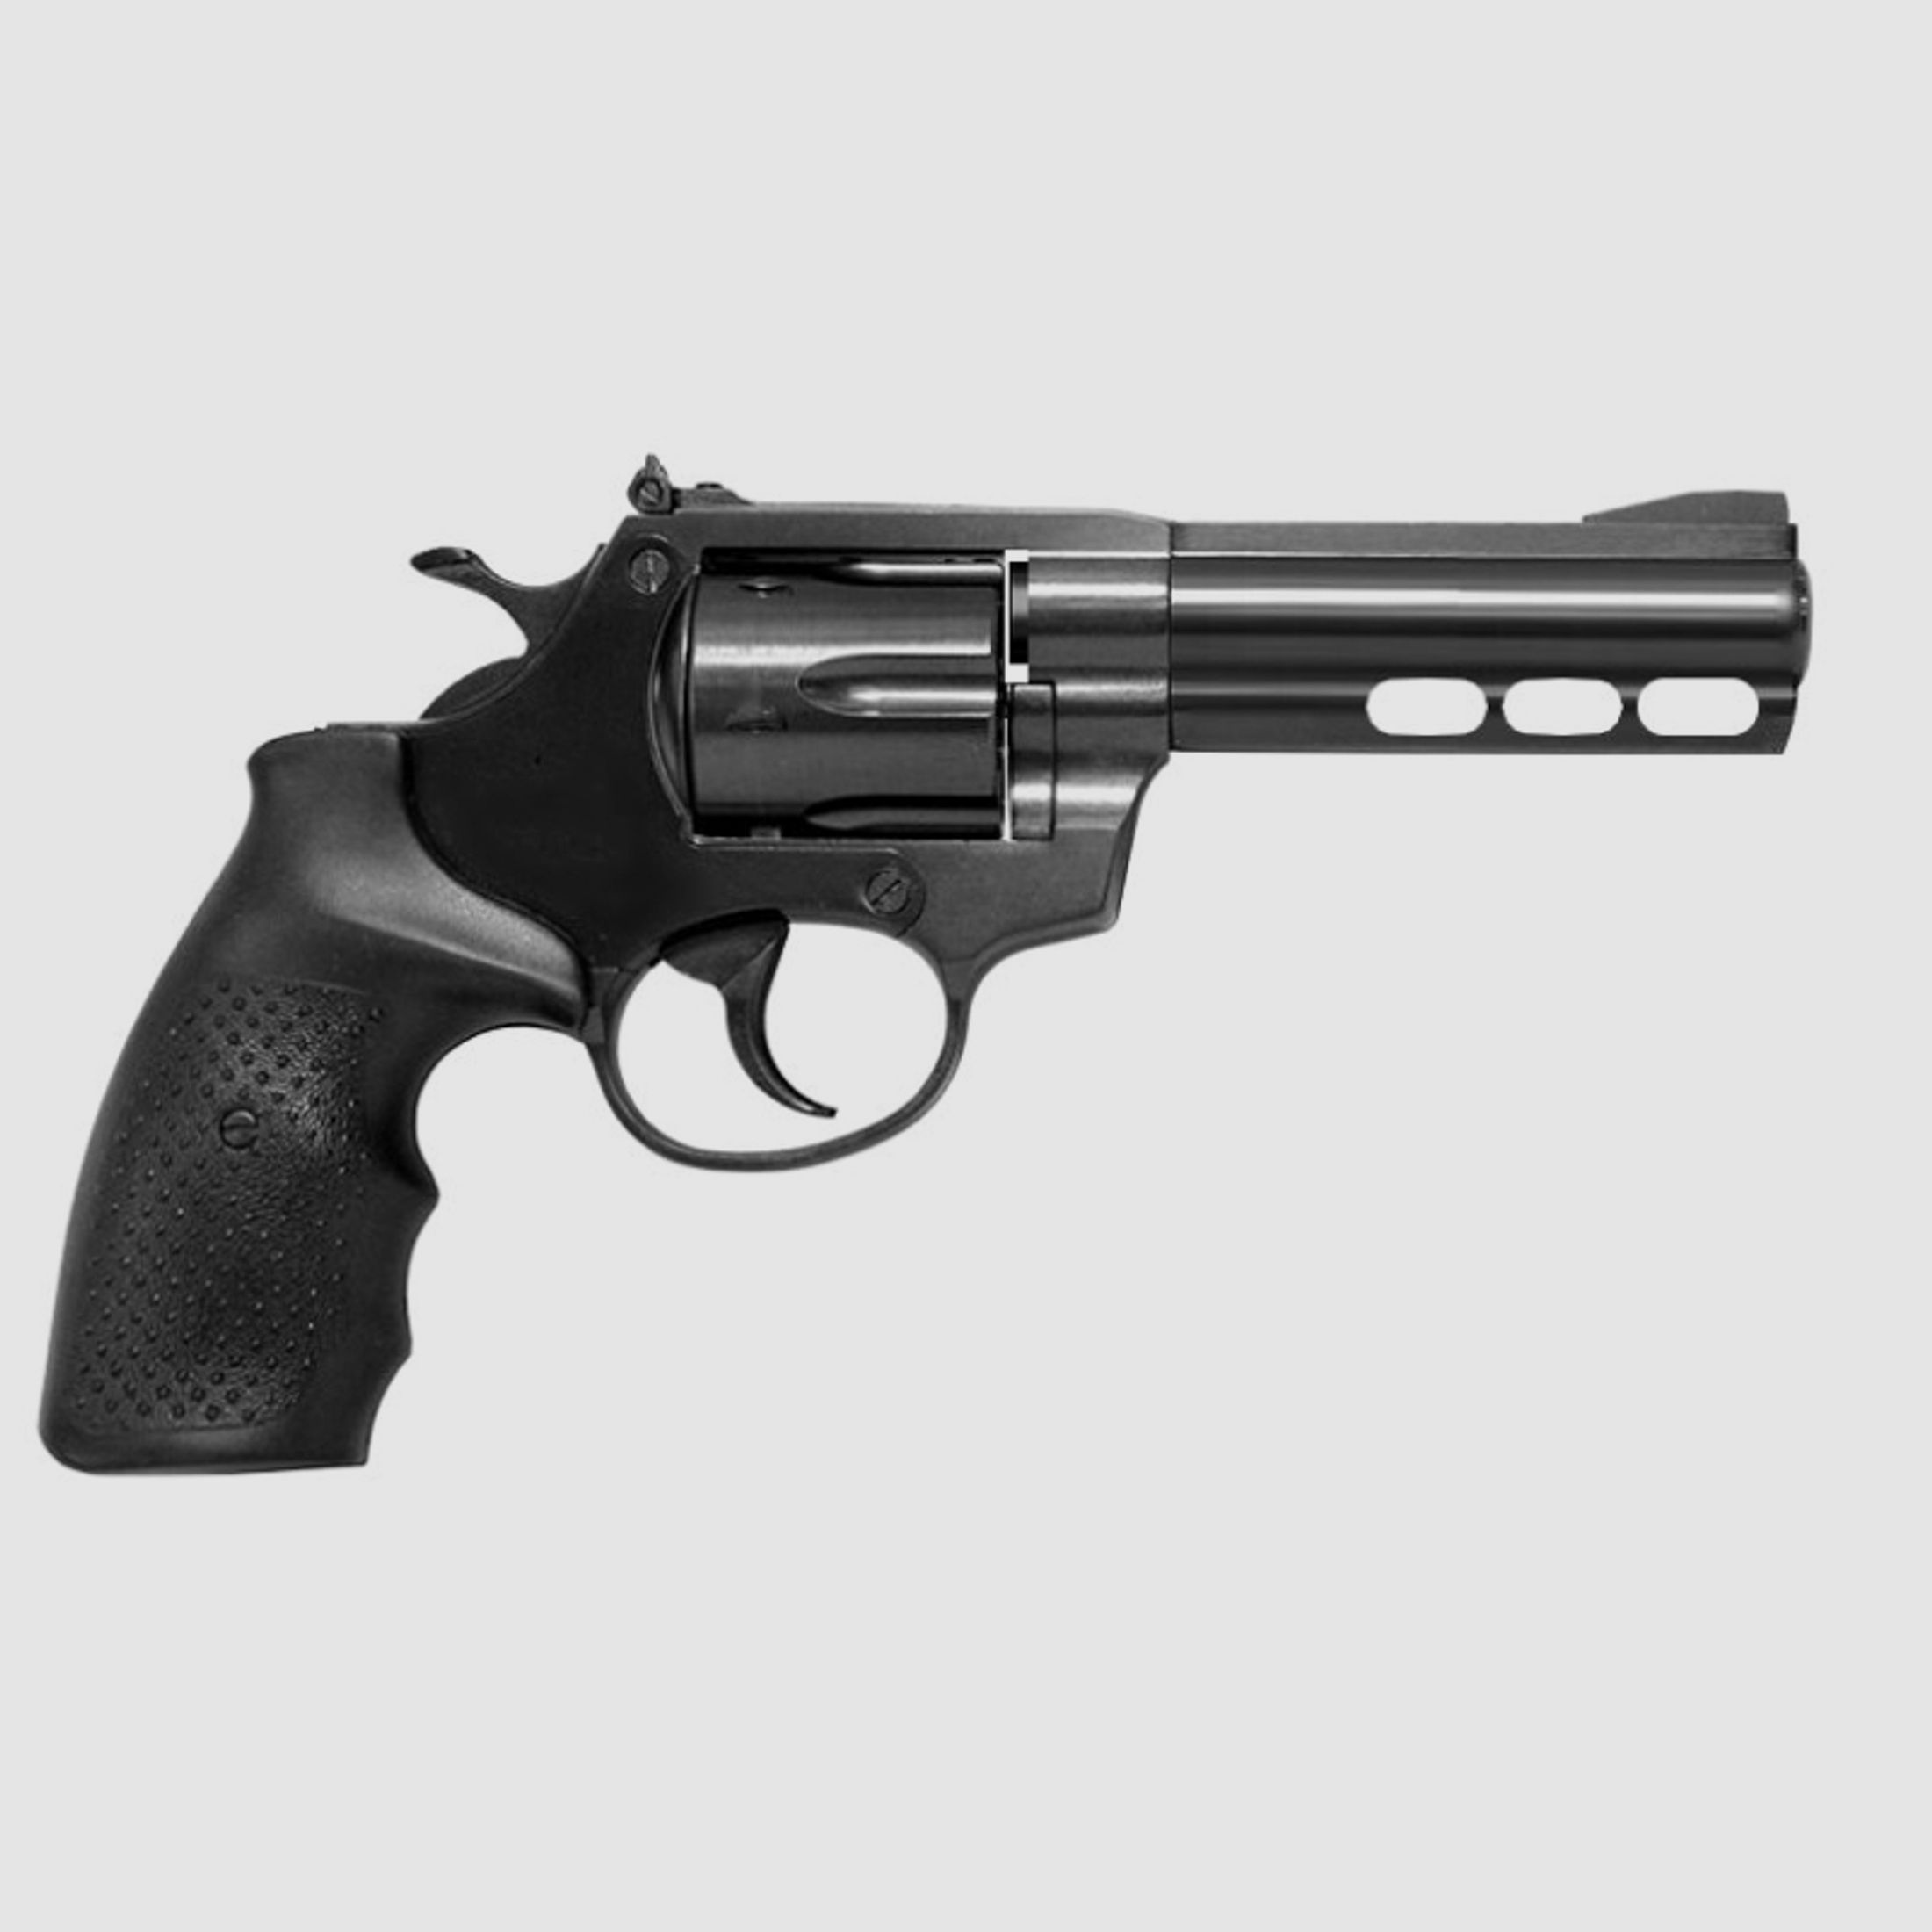 NEU STEEL DOG SALUT SCHRECKSHUSS Revolver SSW mit PTB961 .209 Knall, nicht STEEL COP & EAGLE